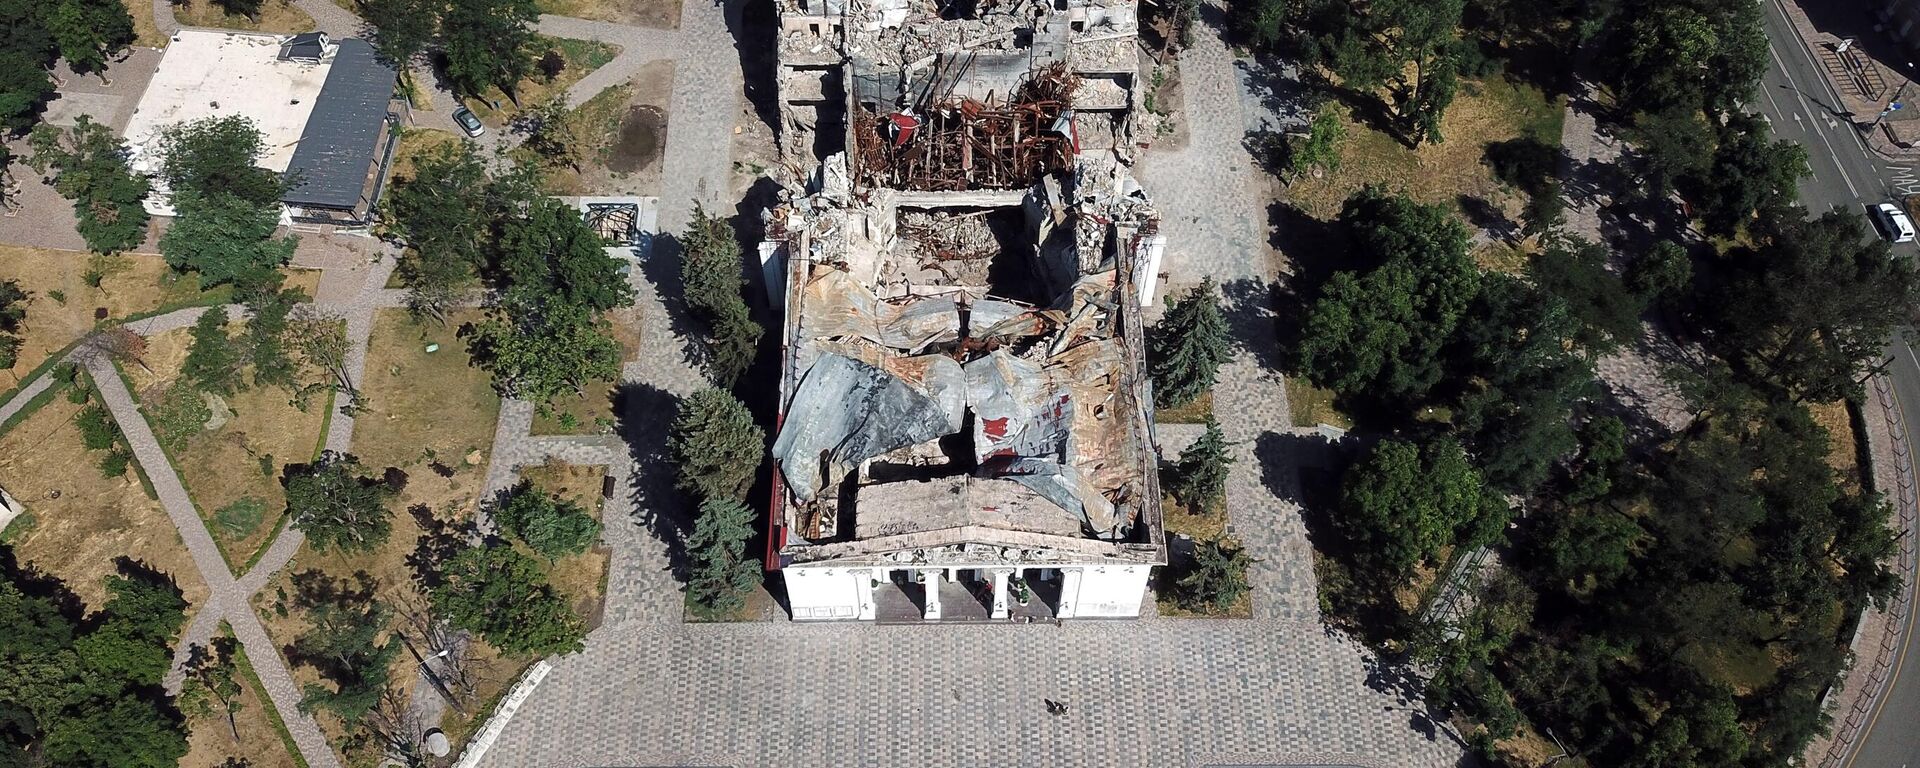 El edificio del Teatro Regional Académico de Donetsk destruido en Mariupol - Sputnik Mundo, 1920, 19.07.2022